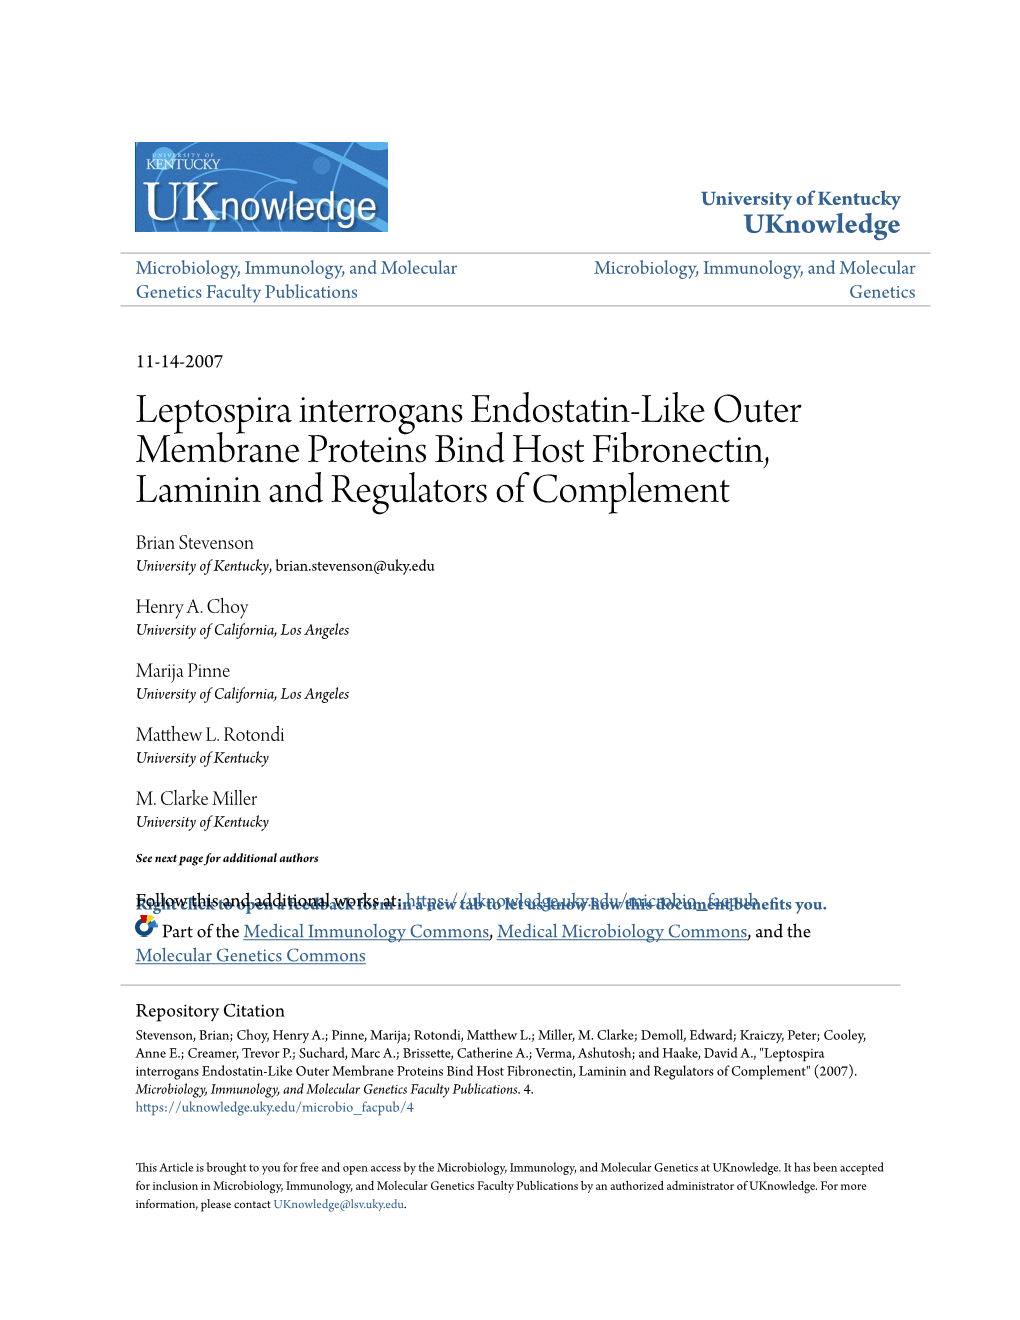 Leptospira Interrogans Endostatin-Like